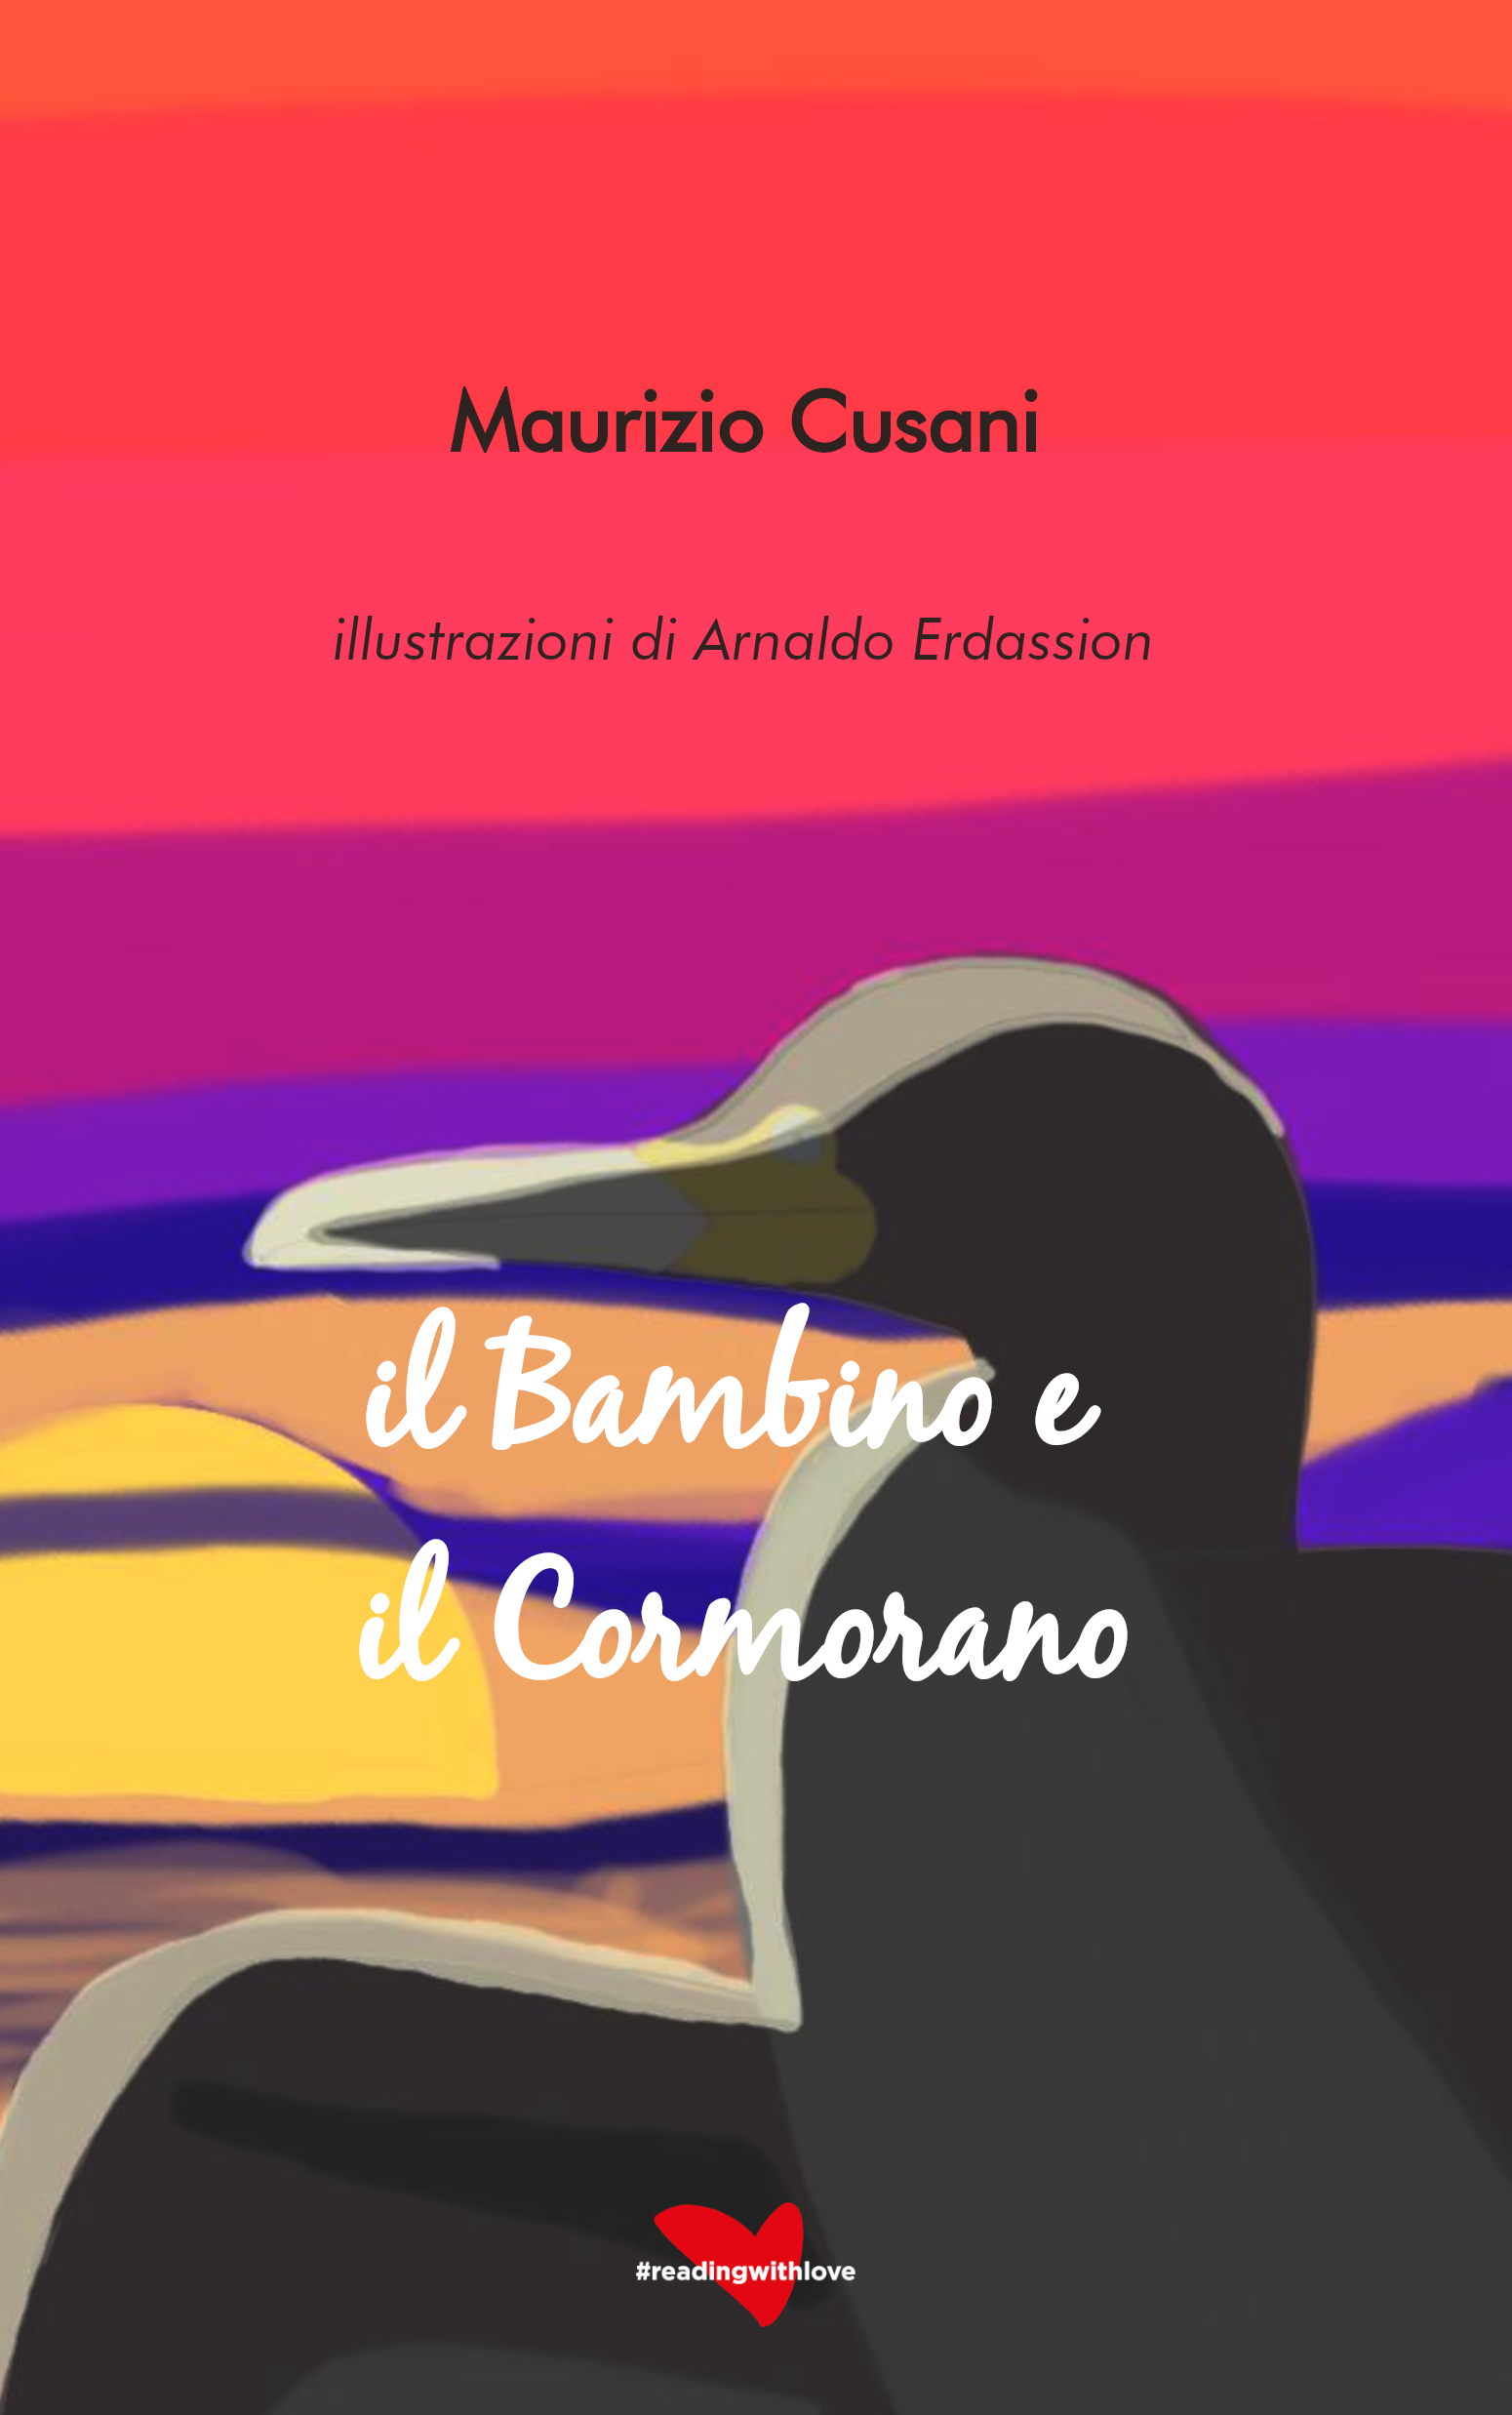 Il bambino e il cormorano - Maurizio Cusani e Arnaldo Erdassion